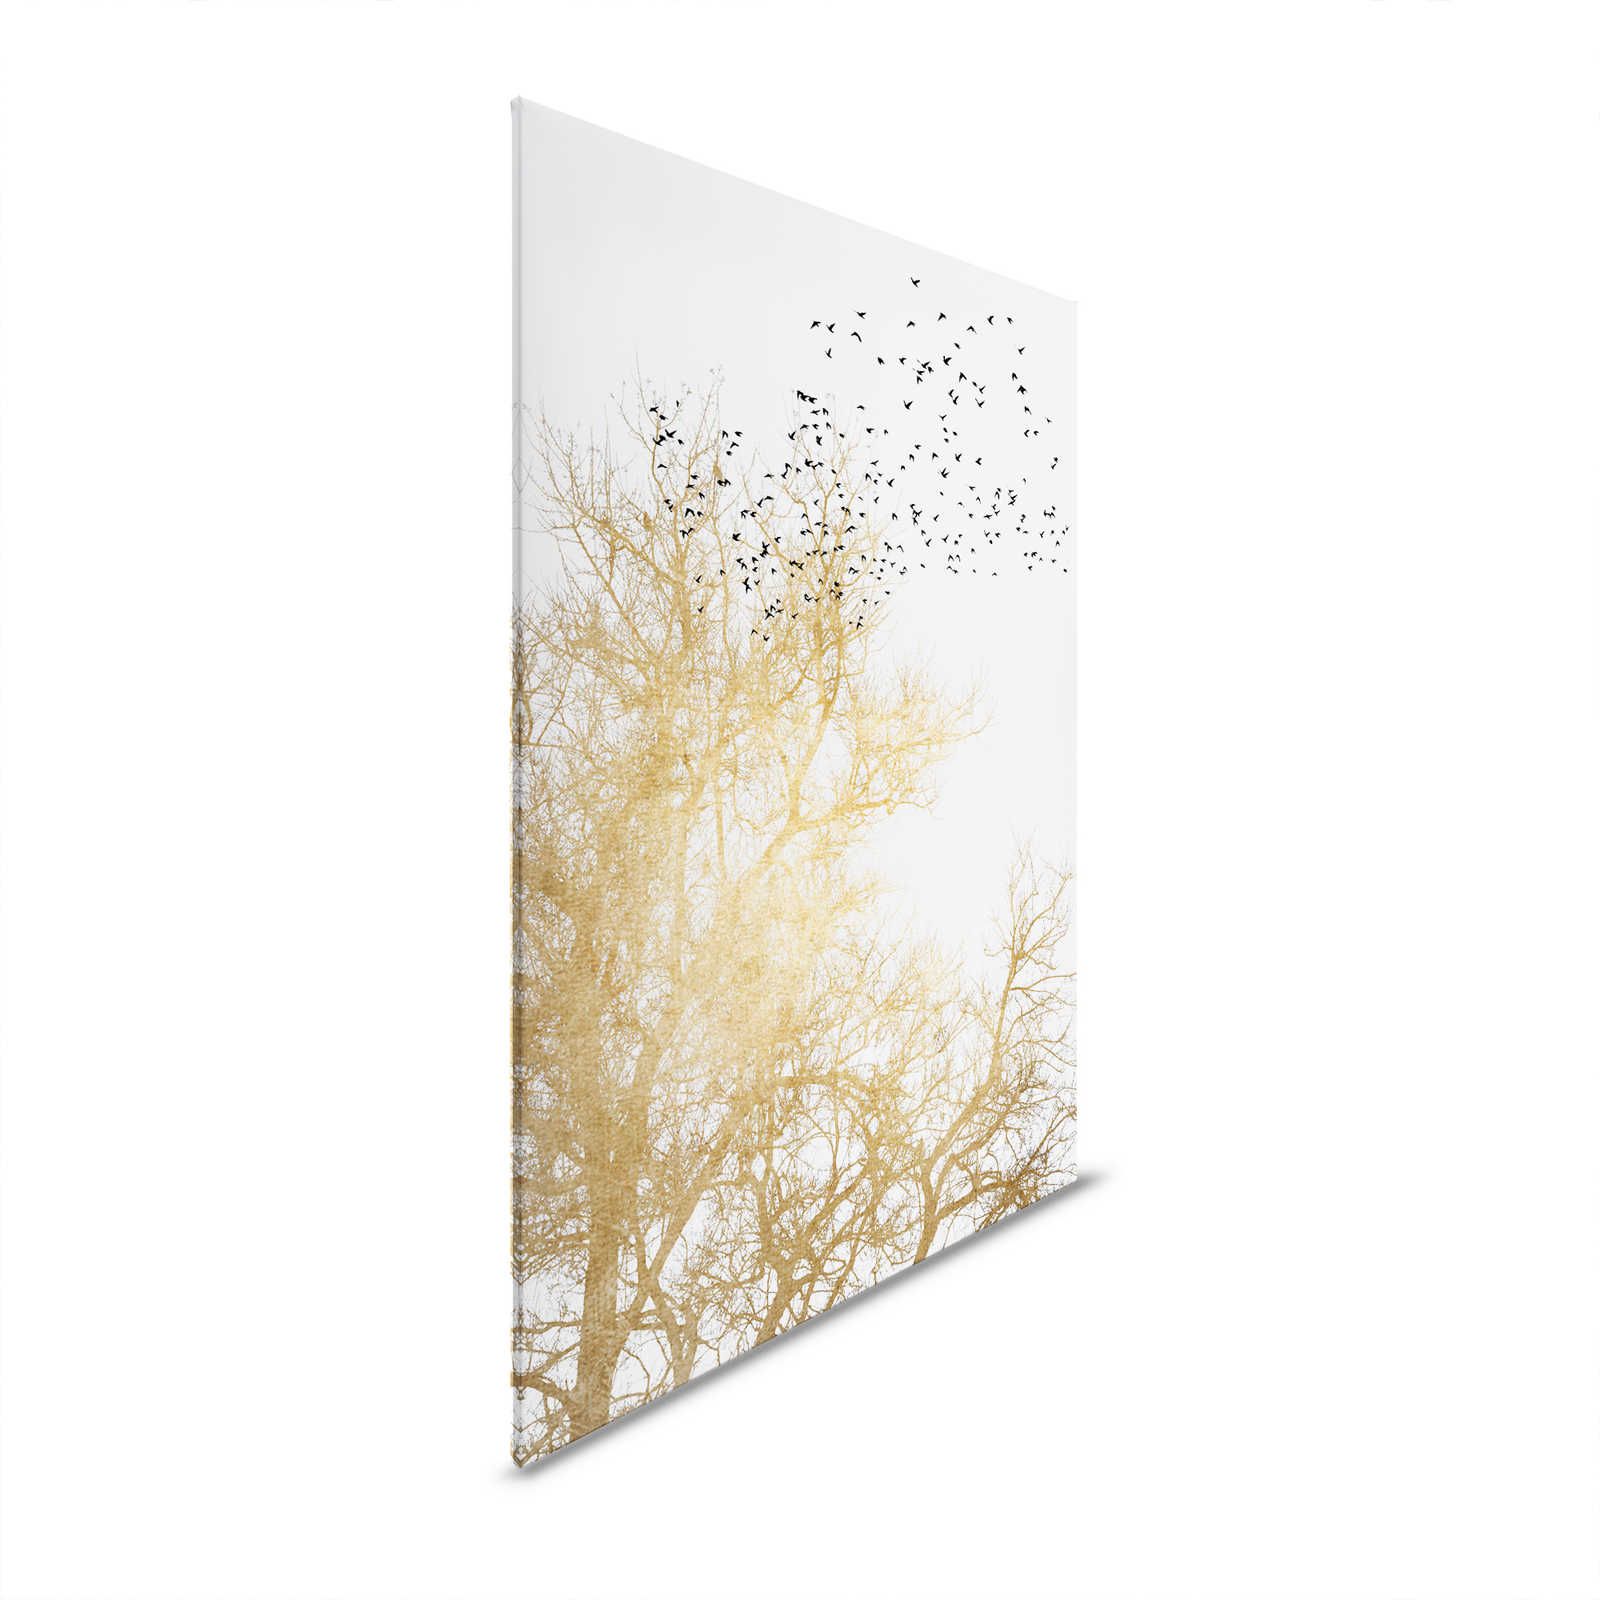 Leinwandbild mit goldenen Bäumen und Vogelschwarm – 0,90 m x 0,60 m
